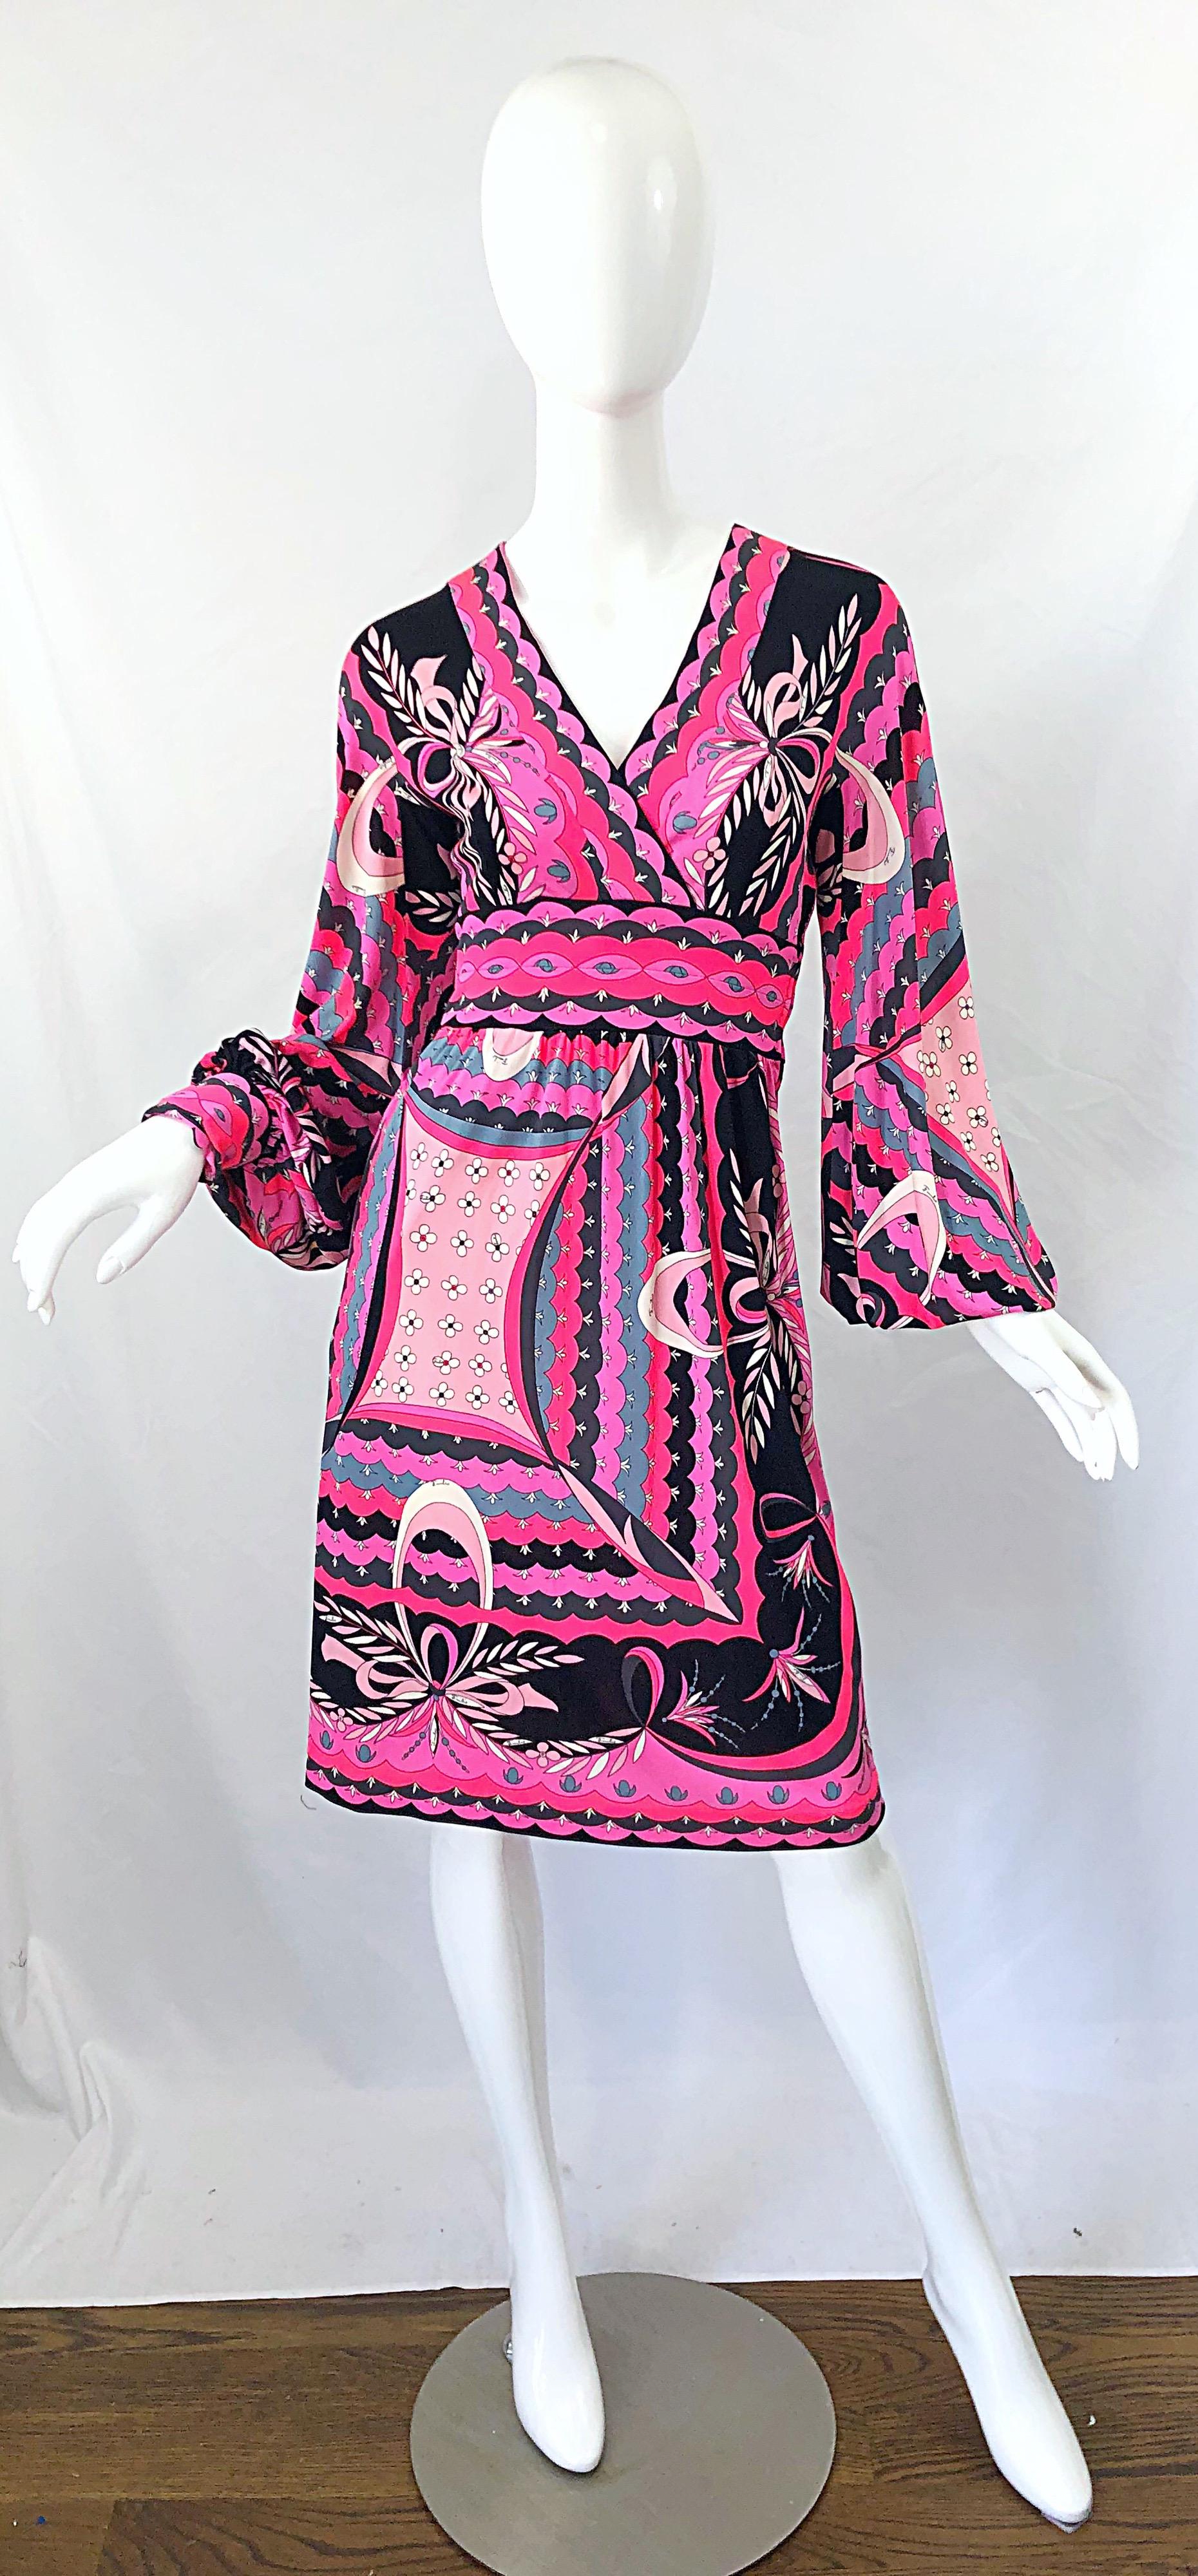 Schönes 1970er EMILIO PUCCI Seidenjersey Kleid ! Mit leuchtenden Farben in Pink, Hellrosa, Grau, Schwarz und Weiß. Der charakteristische Kaleidoskop-Druck. Mieder mit V-Ausschnitt und fließendem Rock. Schluppenärmel mit zwei Druckknöpfen an den